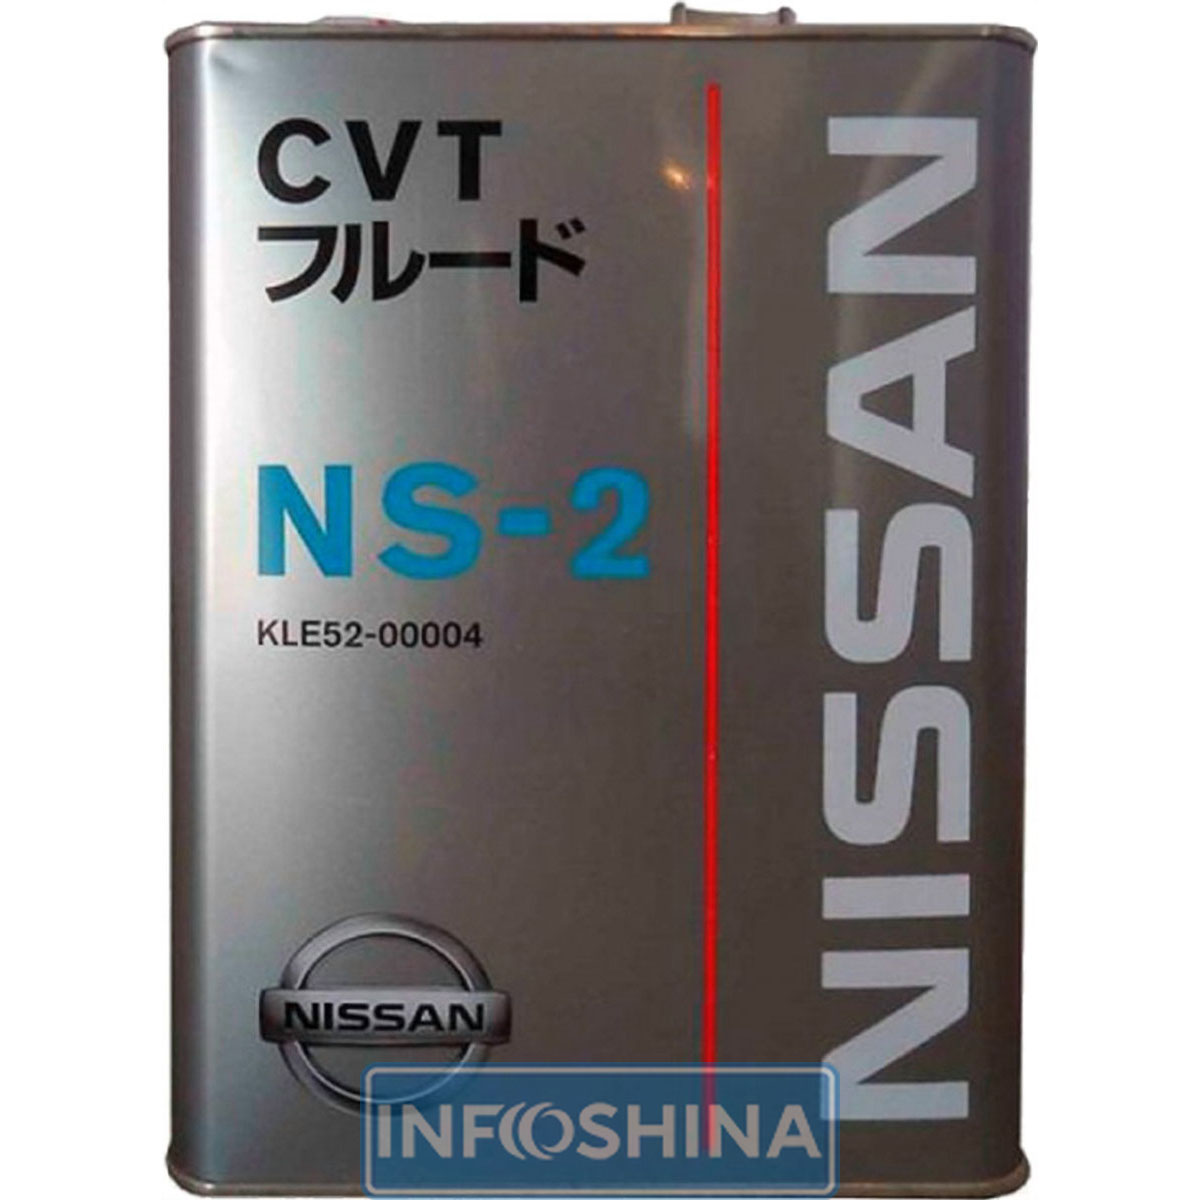 Купить масло Nissan CVT NS-2